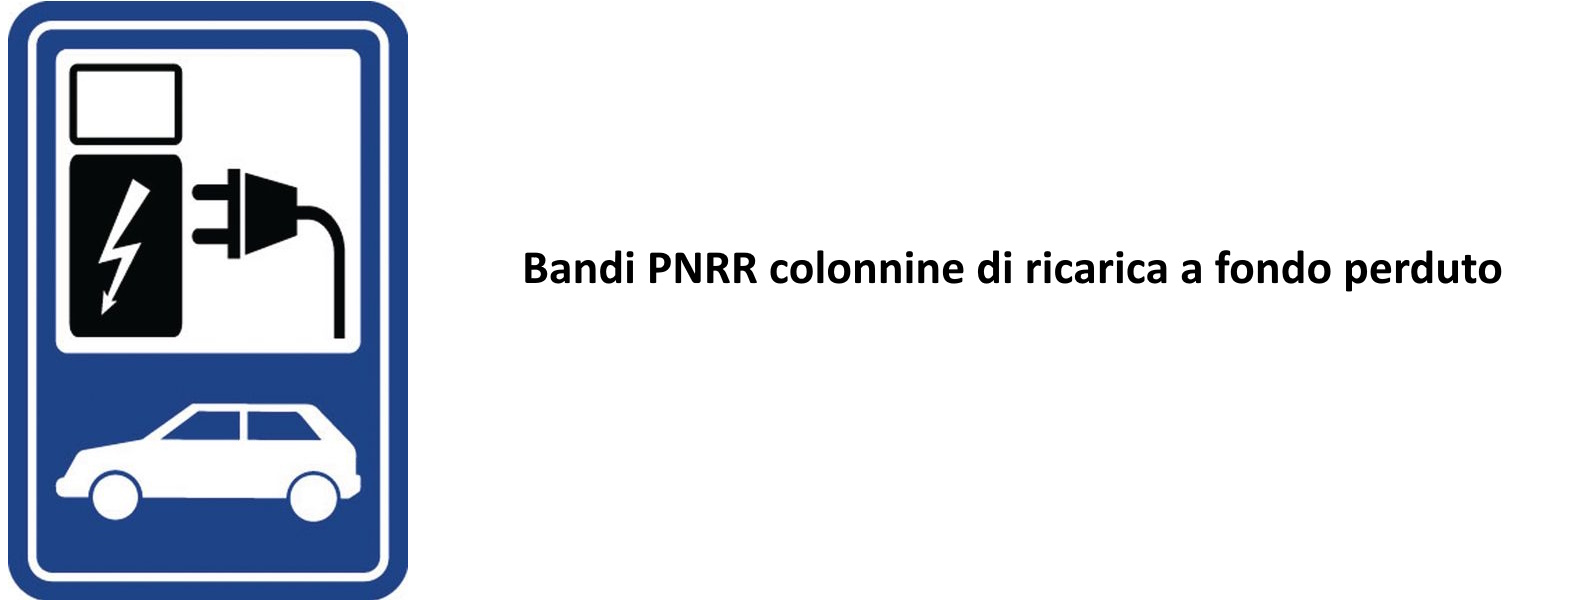 Bandi PNRR colonnine di ricarica a fondo perduto